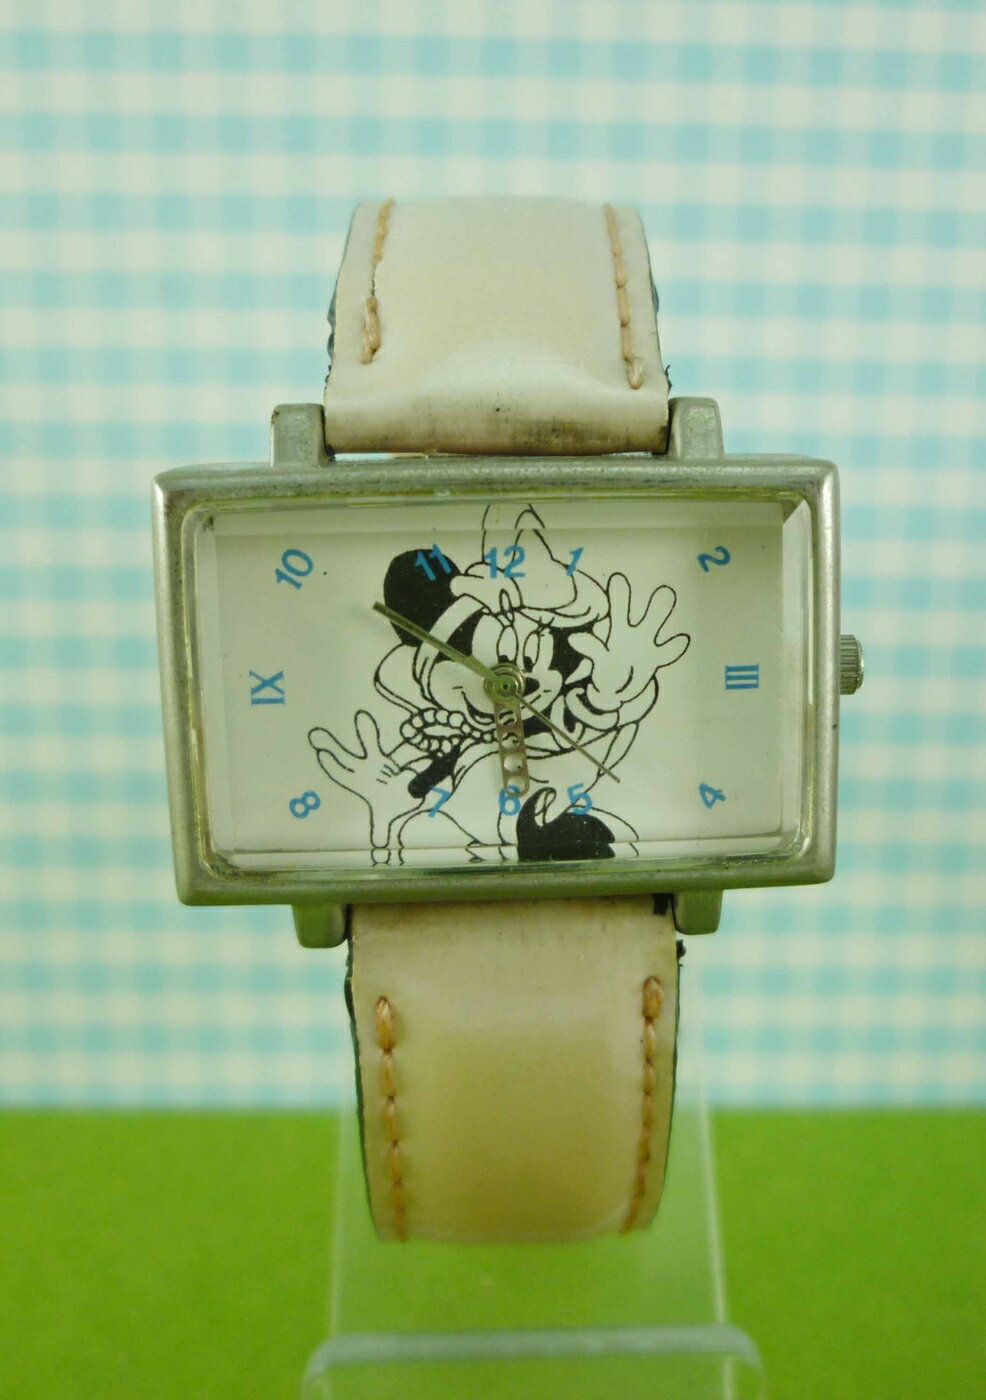 【震撼精品百貨】米奇/米妮 Micky Mouse 造型手錶-米妮哈囉圖案-粉白色 震撼日式精品百貨